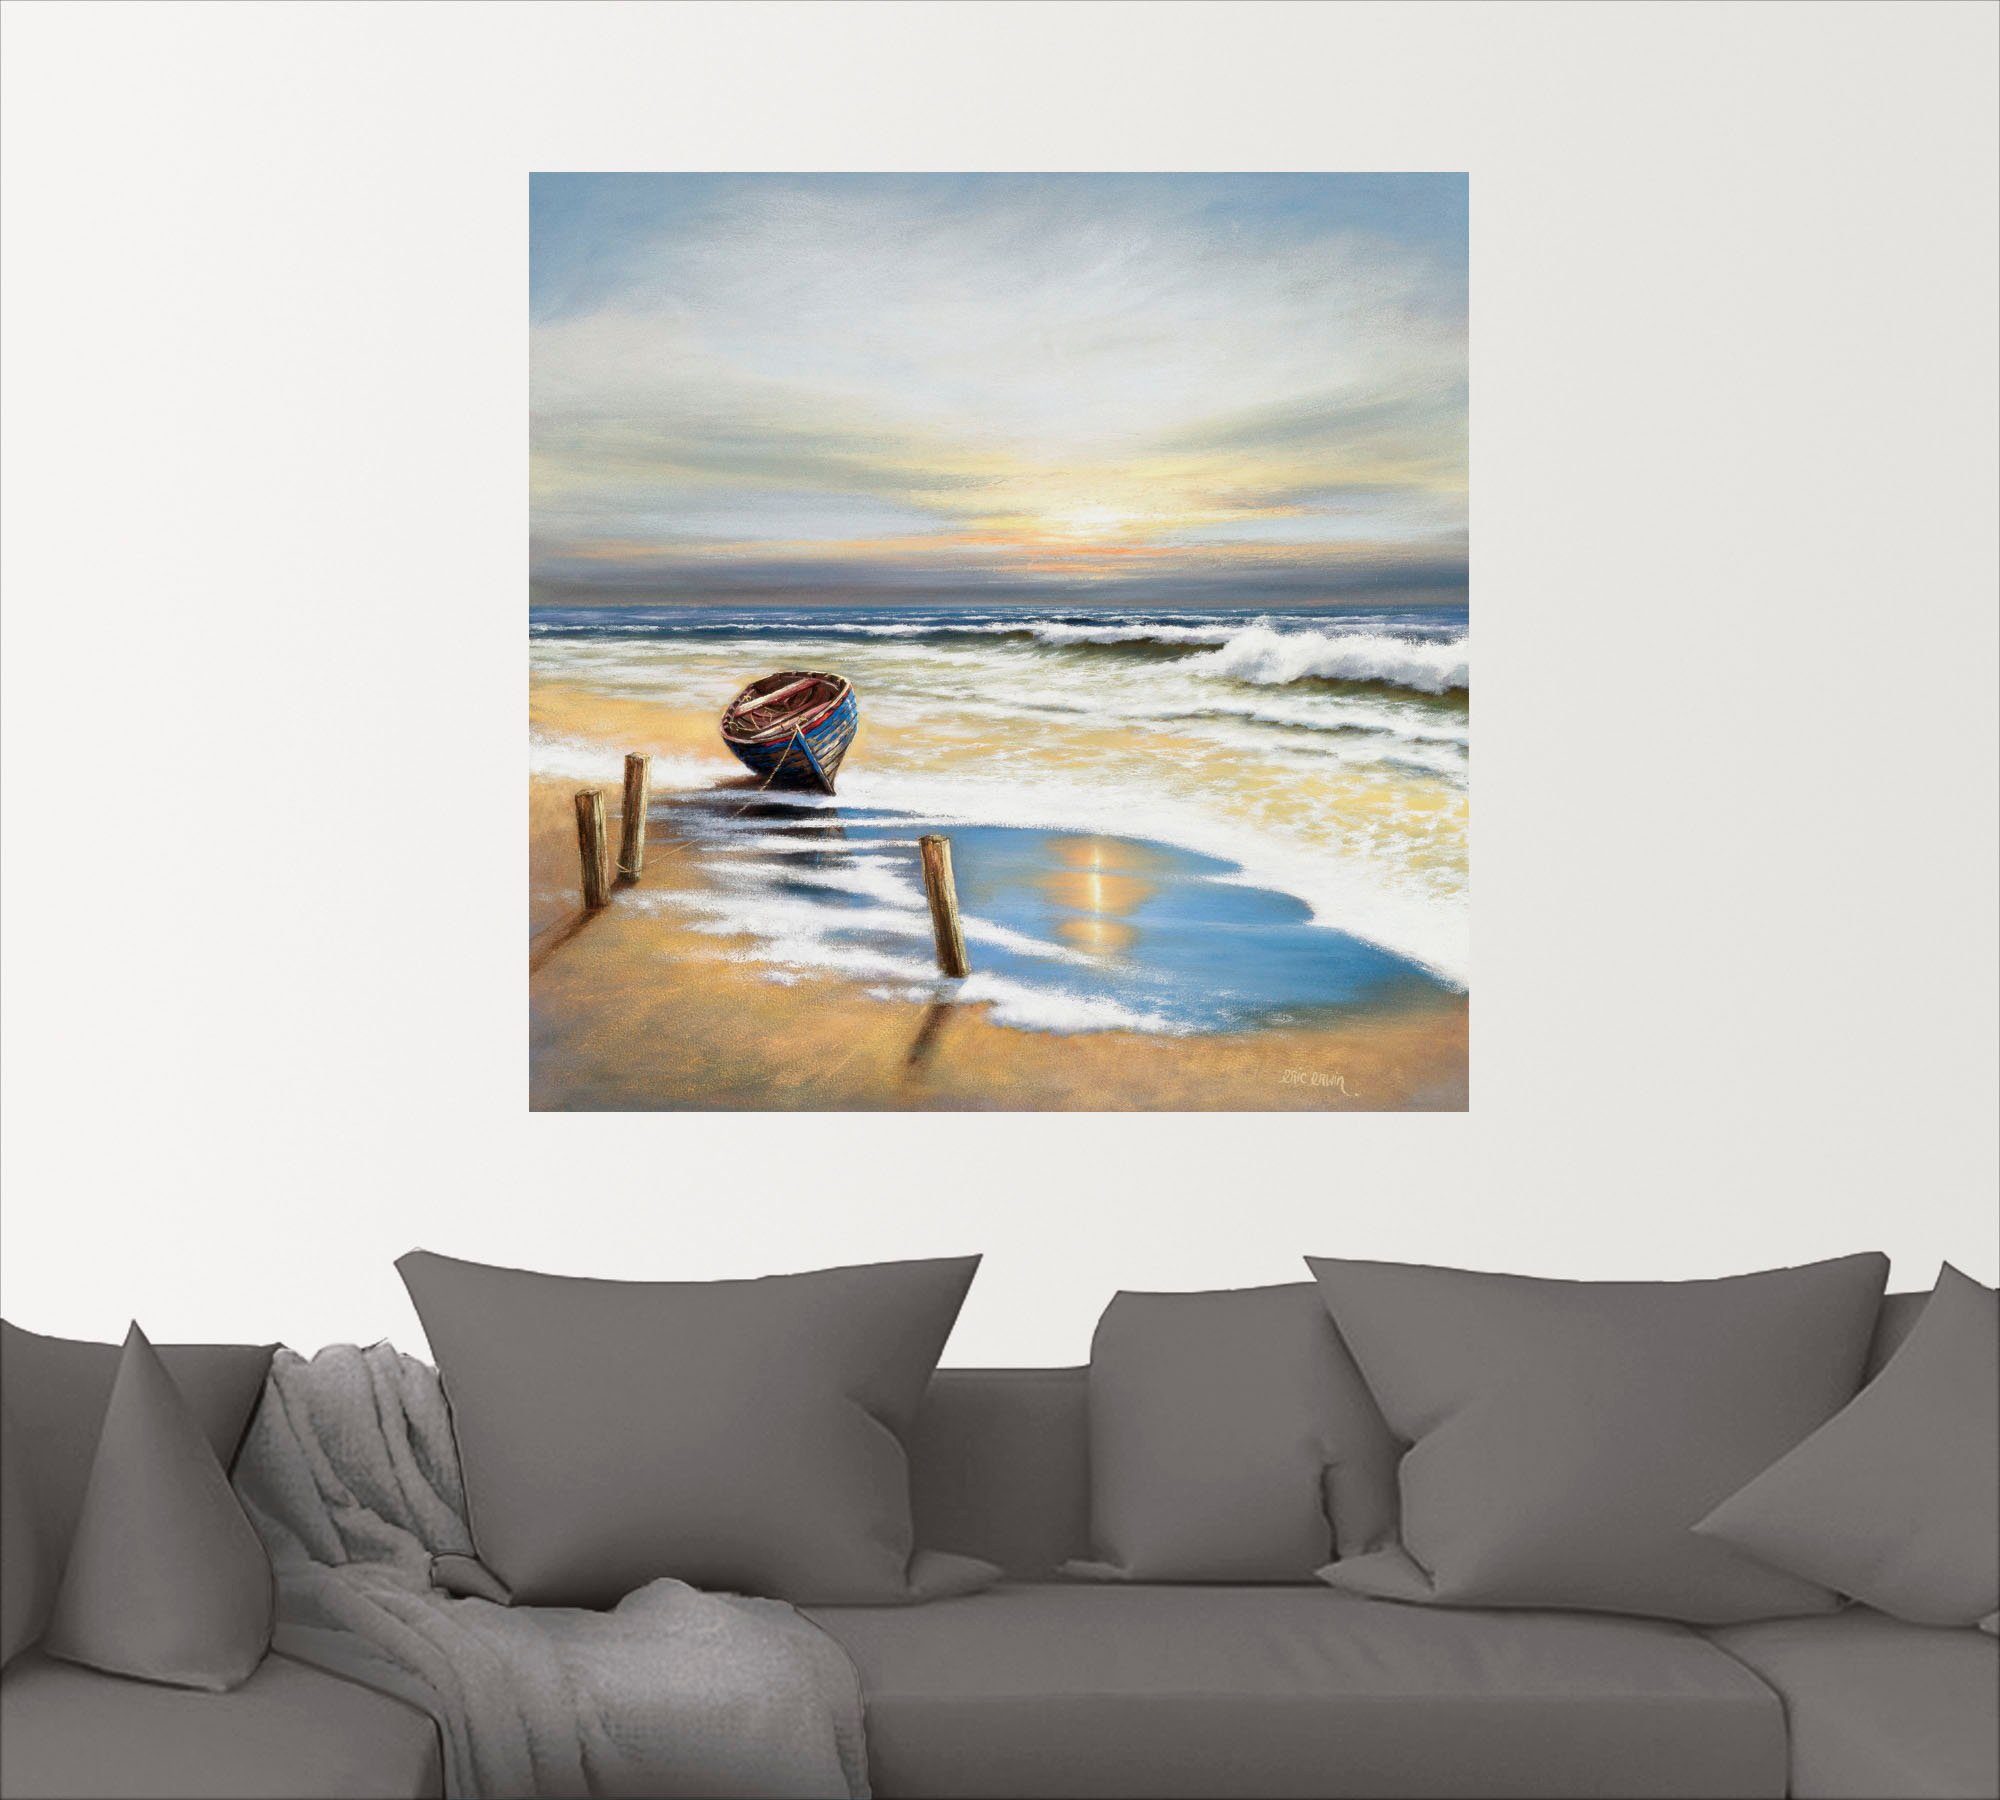 St), oder Leinwandbild, Poster in als (1 Wandbild Größen Wandaufkleber der versch. Artland Boot Strand an Küste,